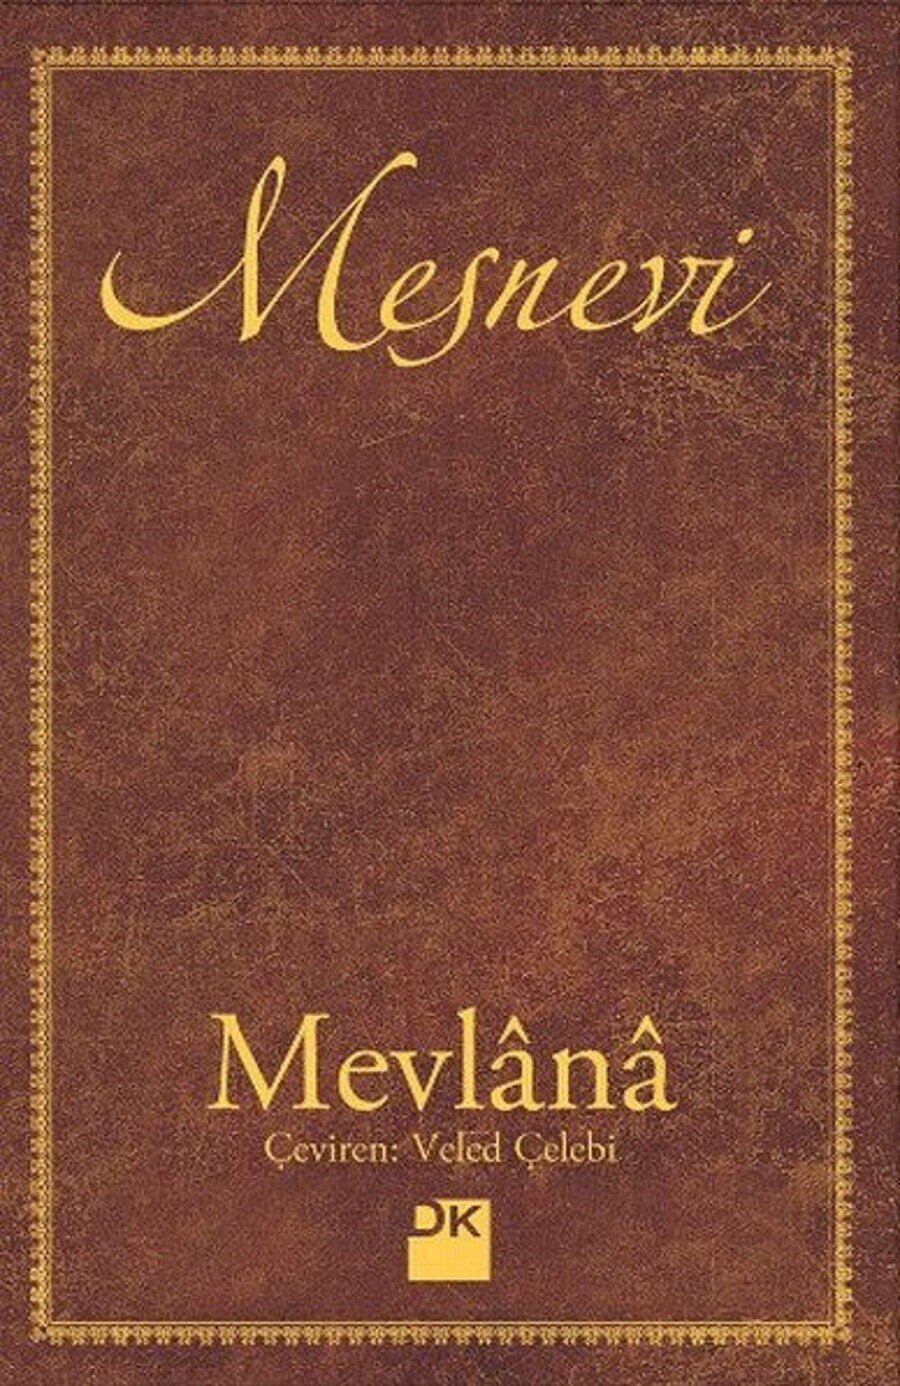 Mevlana'nın Mesnevi’si onun edebi gücünün, söz mülküne sultan oluşunun birer işareti.